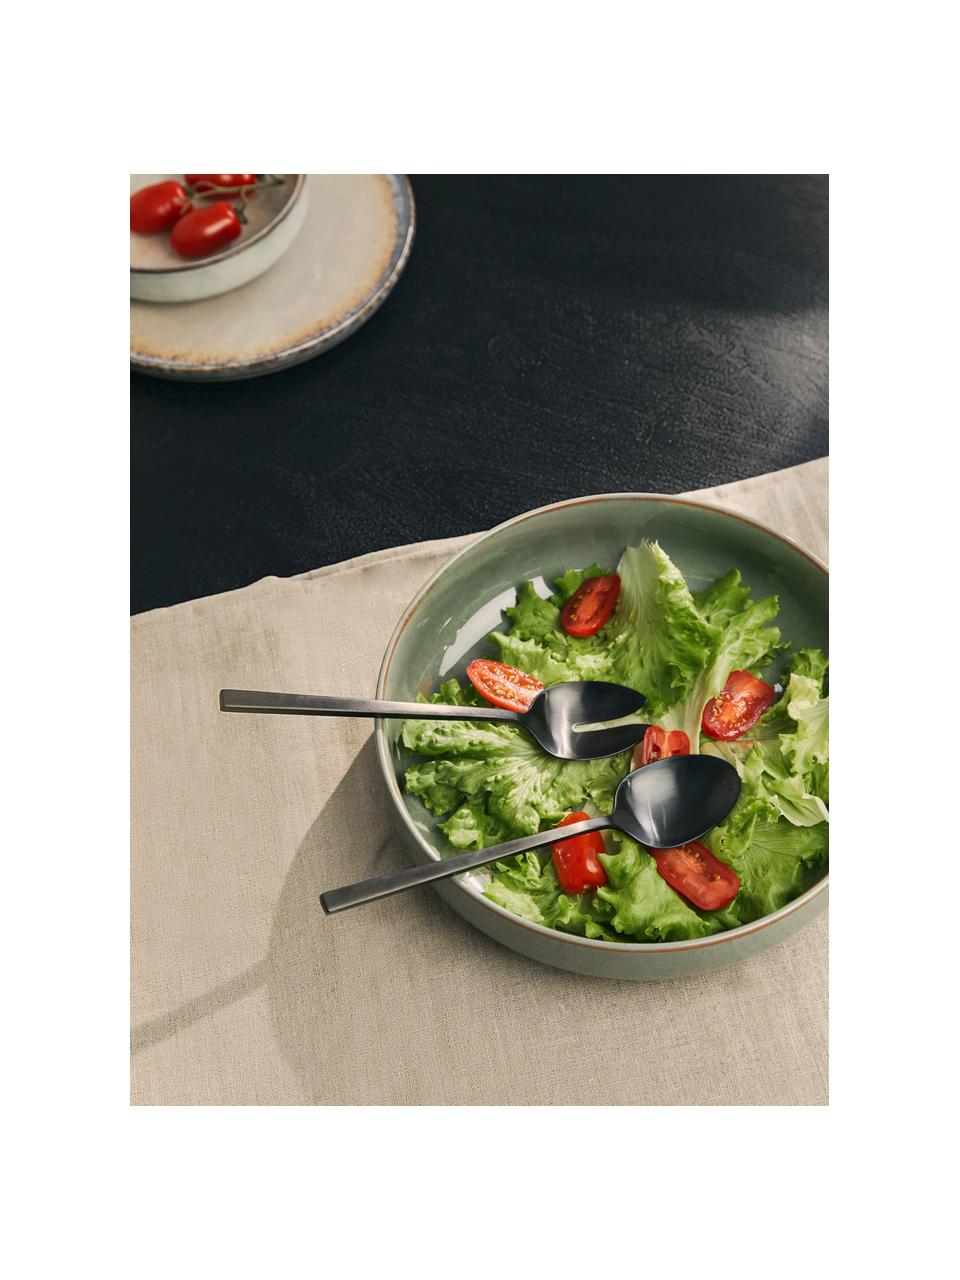 Zwarte saladebestekken Shine, set van 2, Edelstaal 18/10

Het bestek is gemaakt van roestvrij staal. Het is daardoor duurzaam, roest niet en is bestand tegen bacteriën., Zwart, L 24 cm